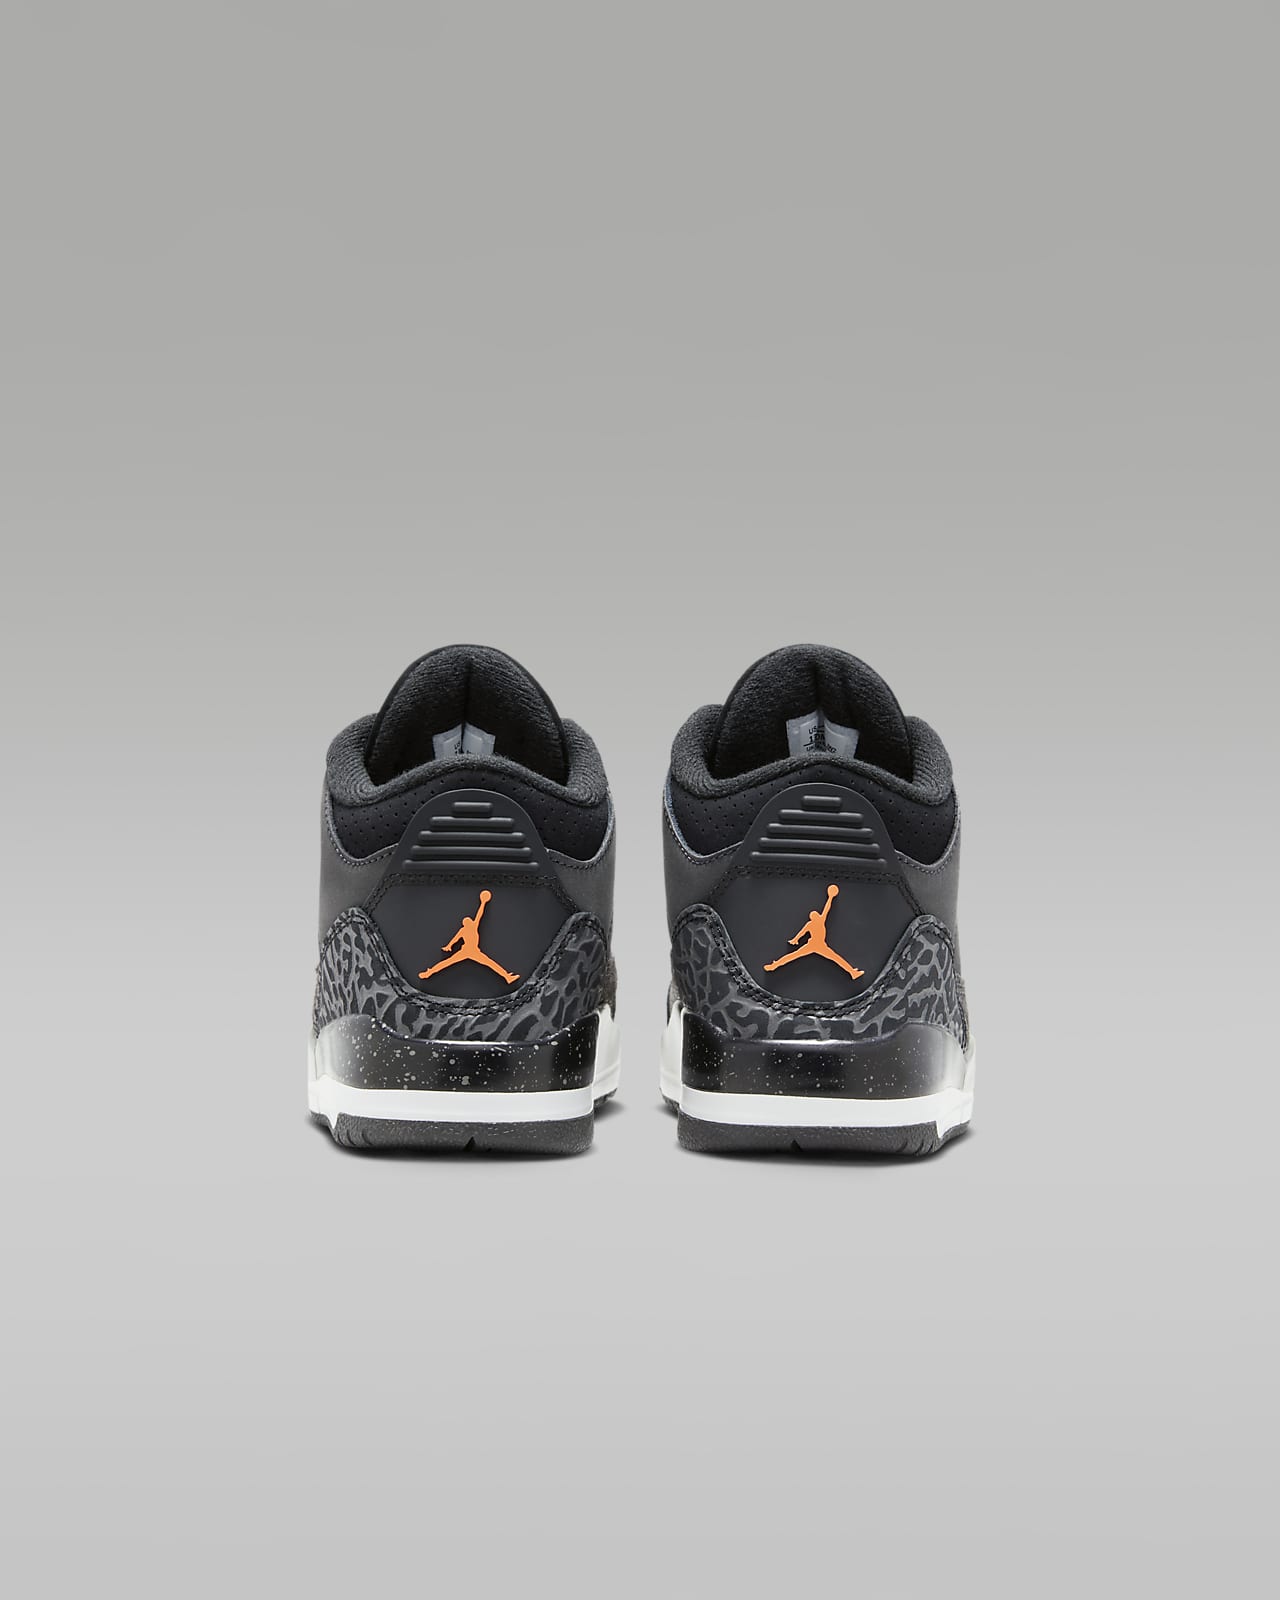 Air Jordan 3 Retro Big Kids' Shoes